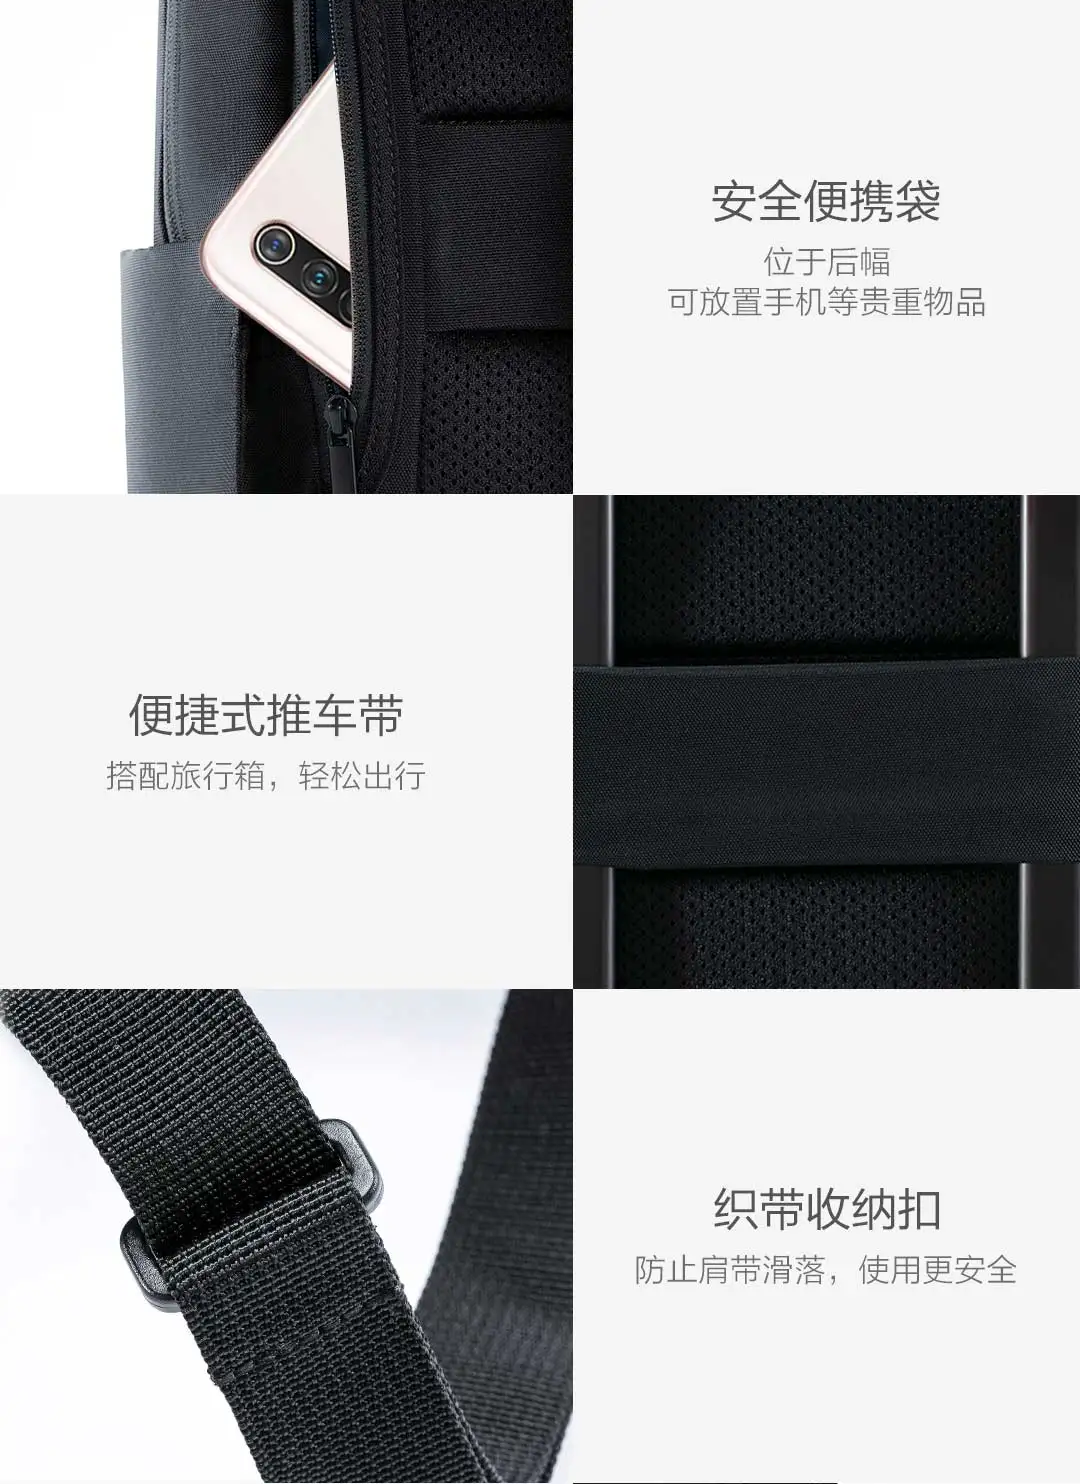 Xiaomi классический деловой рюкзак 2 двойной склад хранения декомпрессии амортизация трехмерный 4 класса водоотталкивающий